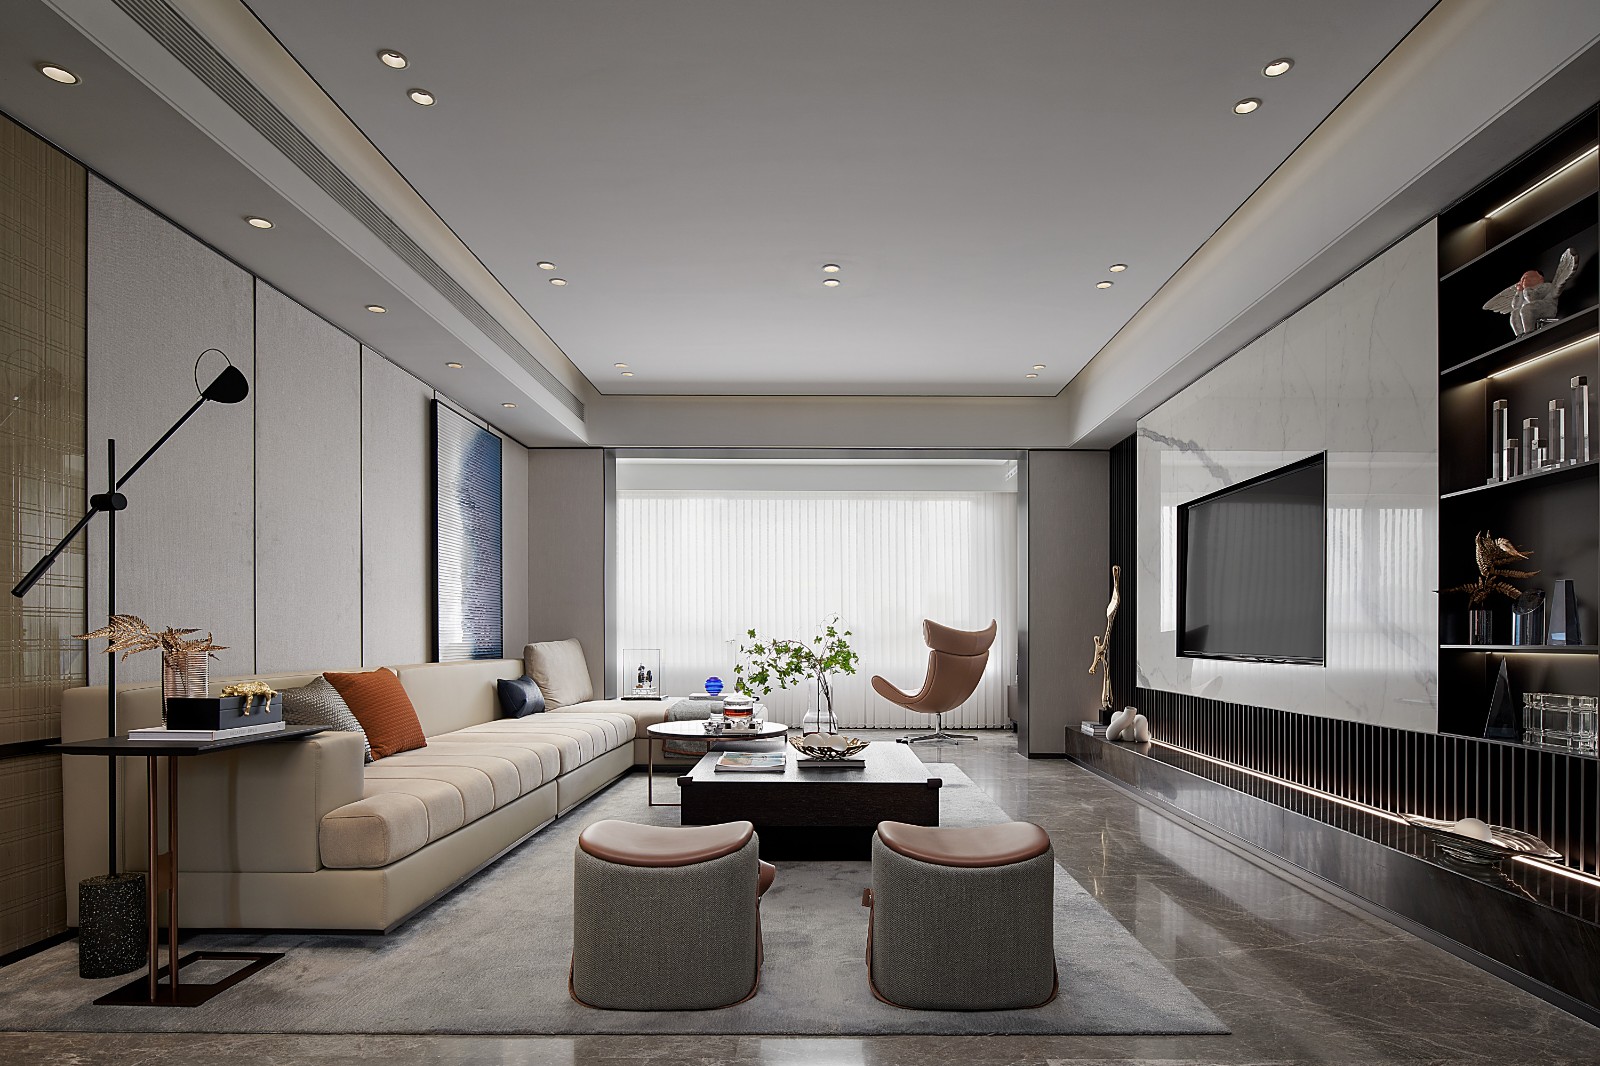 客厅落地窗让空间拥有较好的采光，空间软装高雅而富有高级质感。